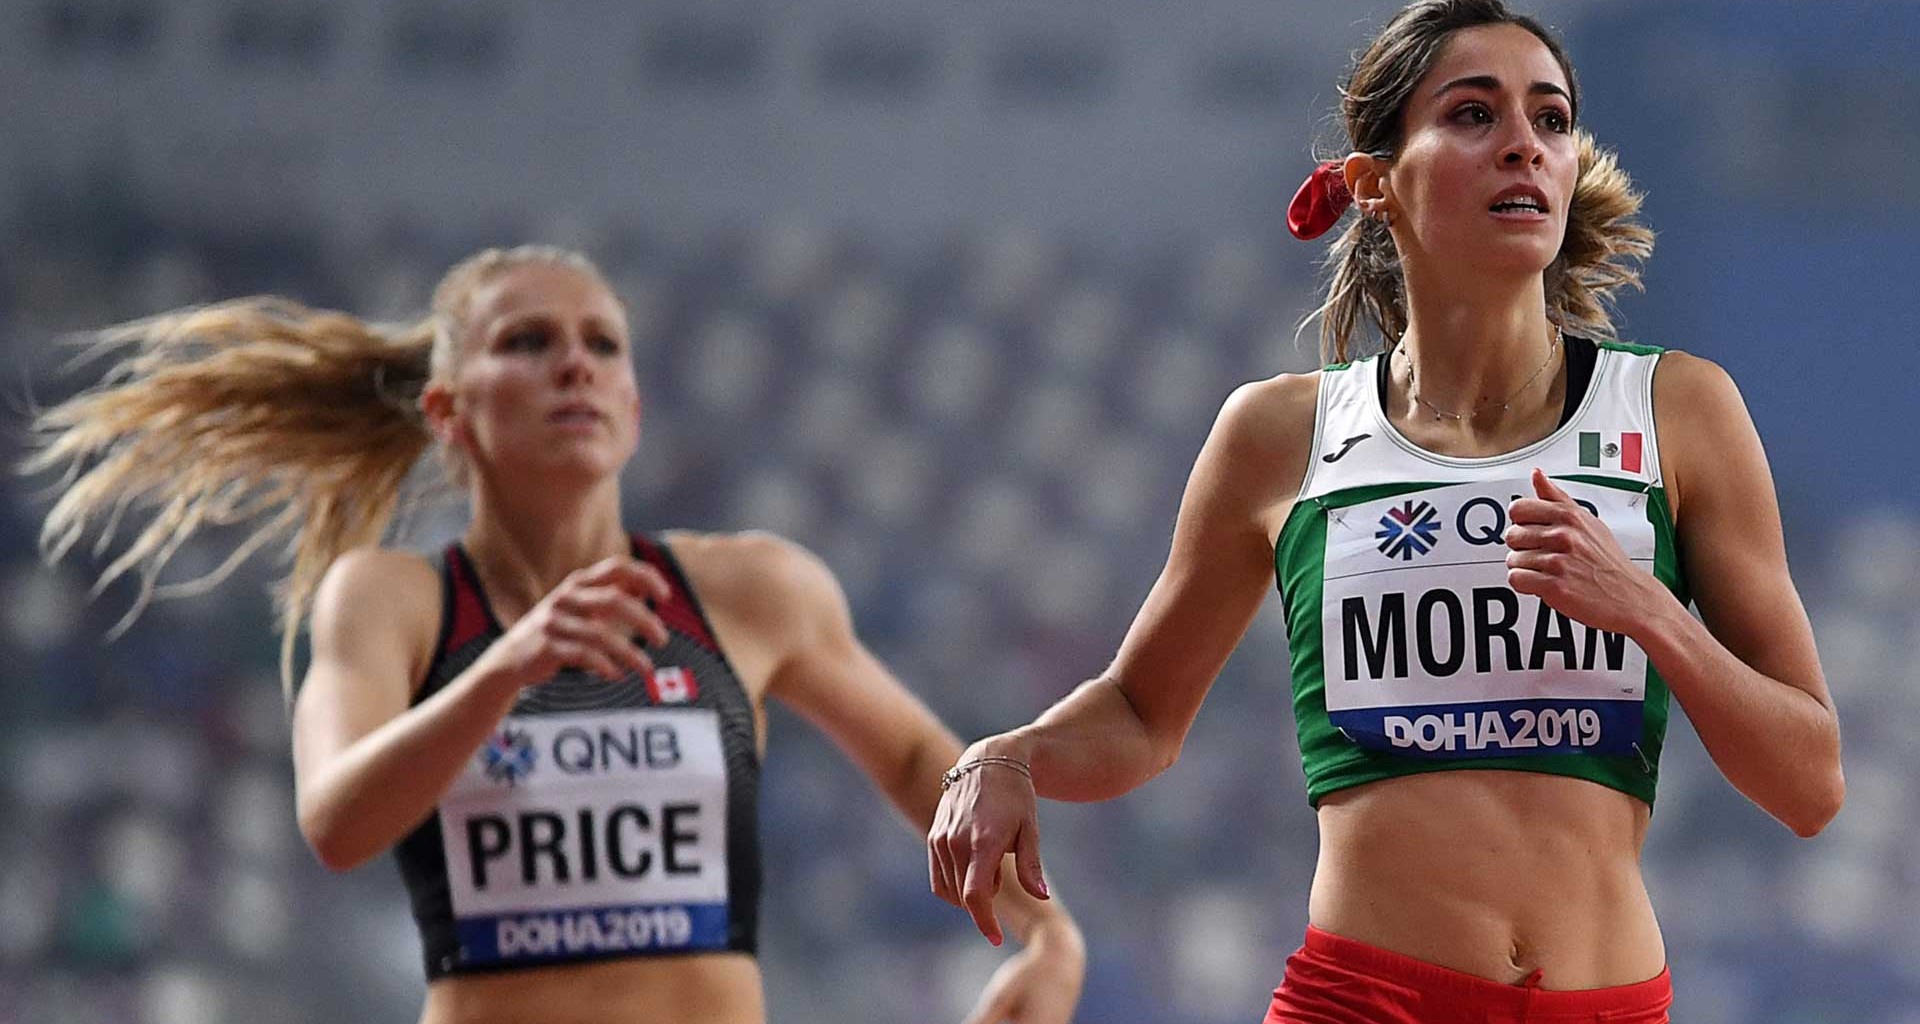 Logró Paola Morán pase a semifinal en Campeonato Mundial de Atletismo